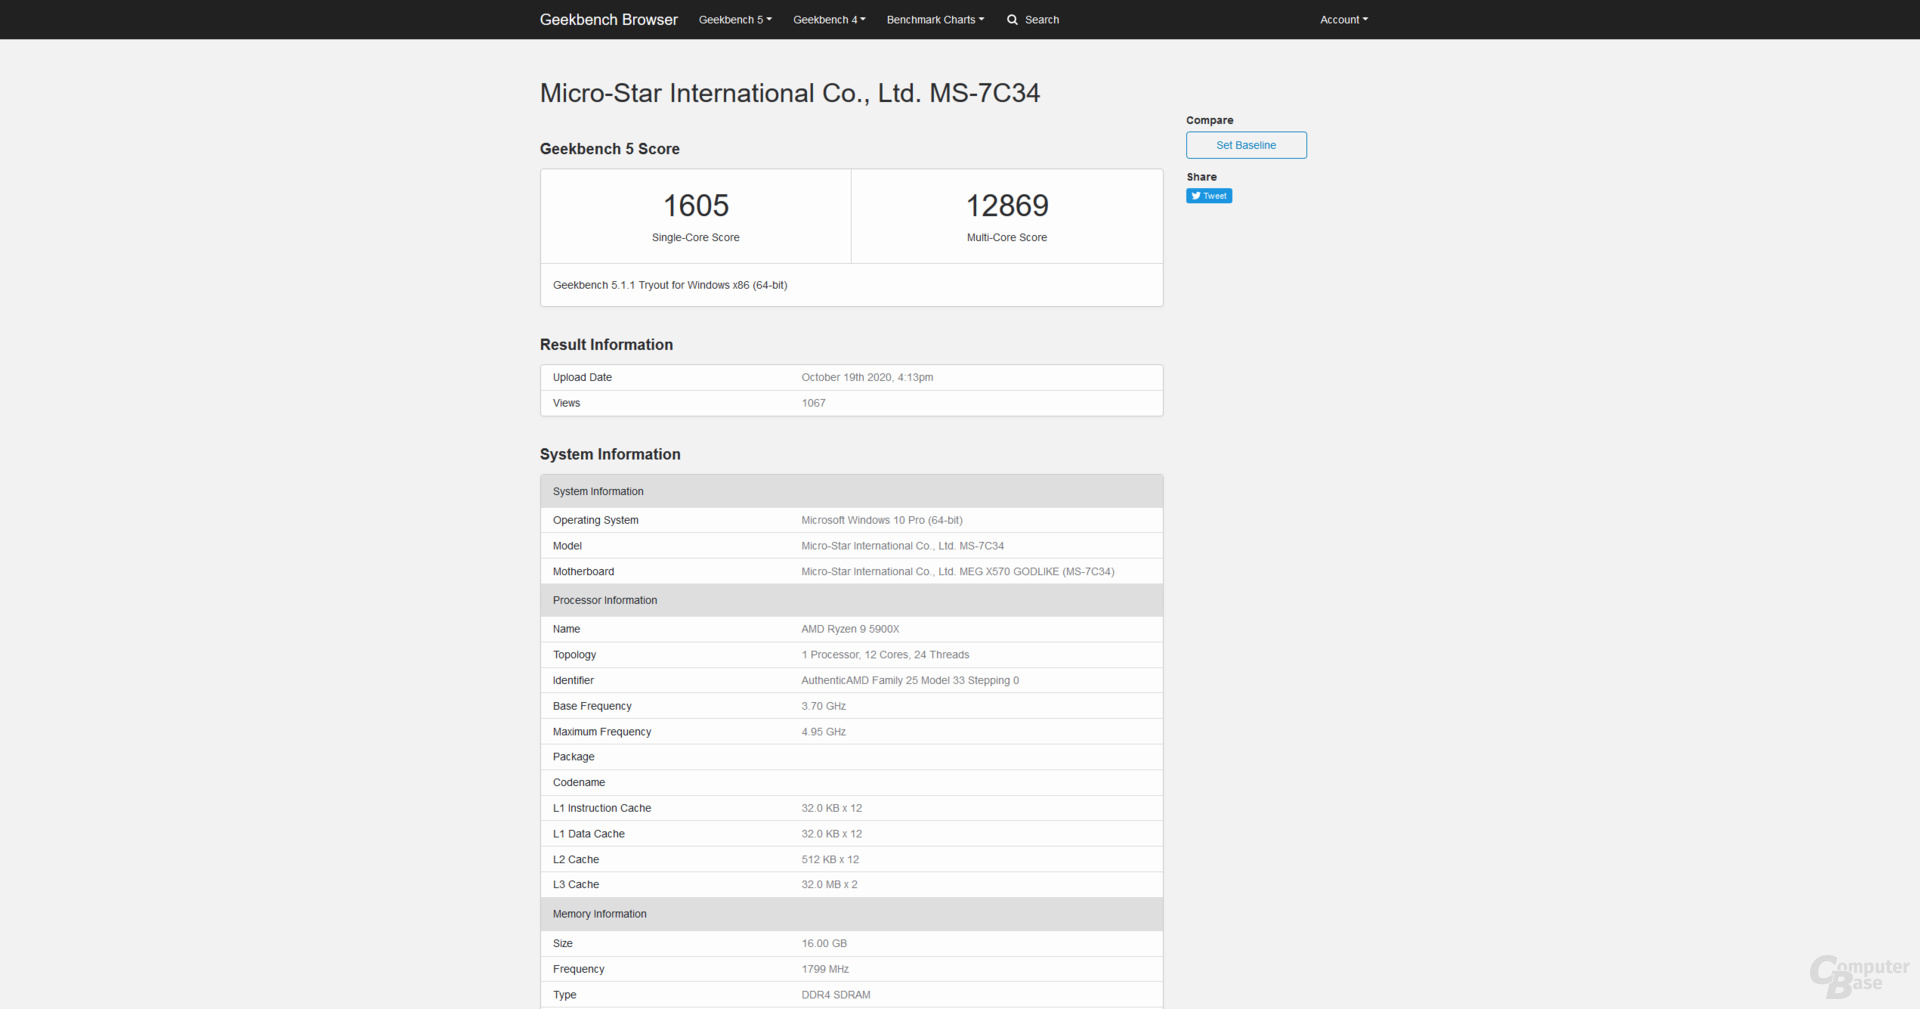 AMD Ryzen 9 5900X im Geekbench 5